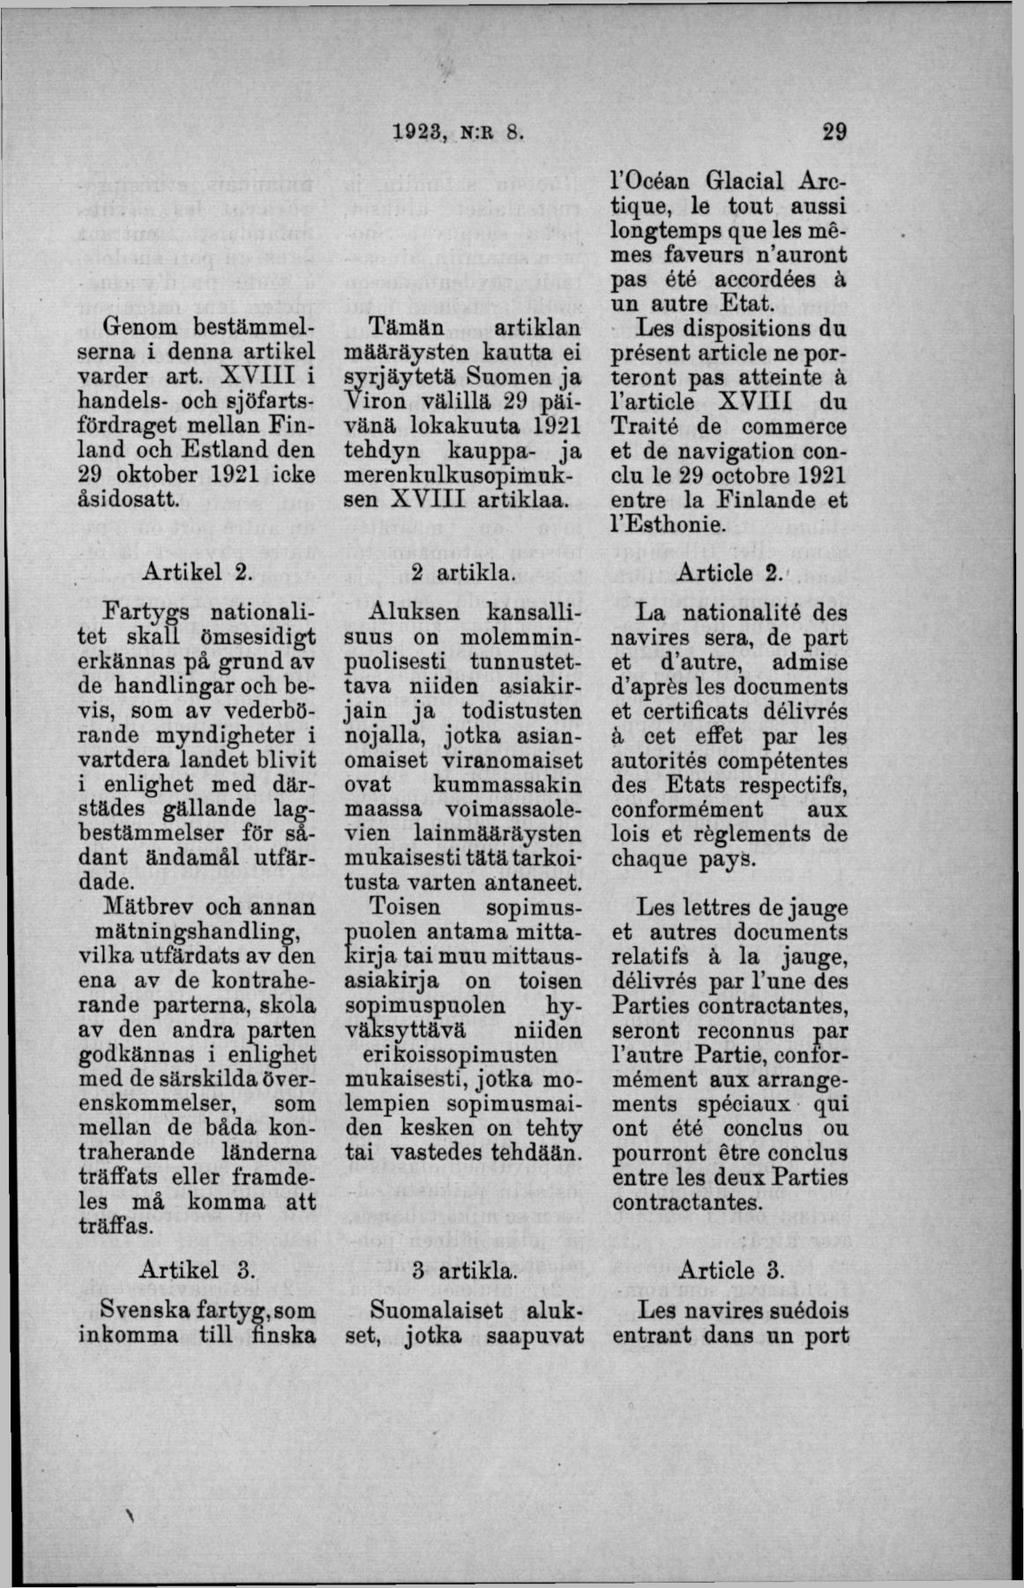 Genom bestäm m elserna i denna artikel varder art. X V III i handels- och sjöfartsfördraget mellan F in land och E stland den 29 oktober 1921 icke åsidosatt. A rtikel 2.